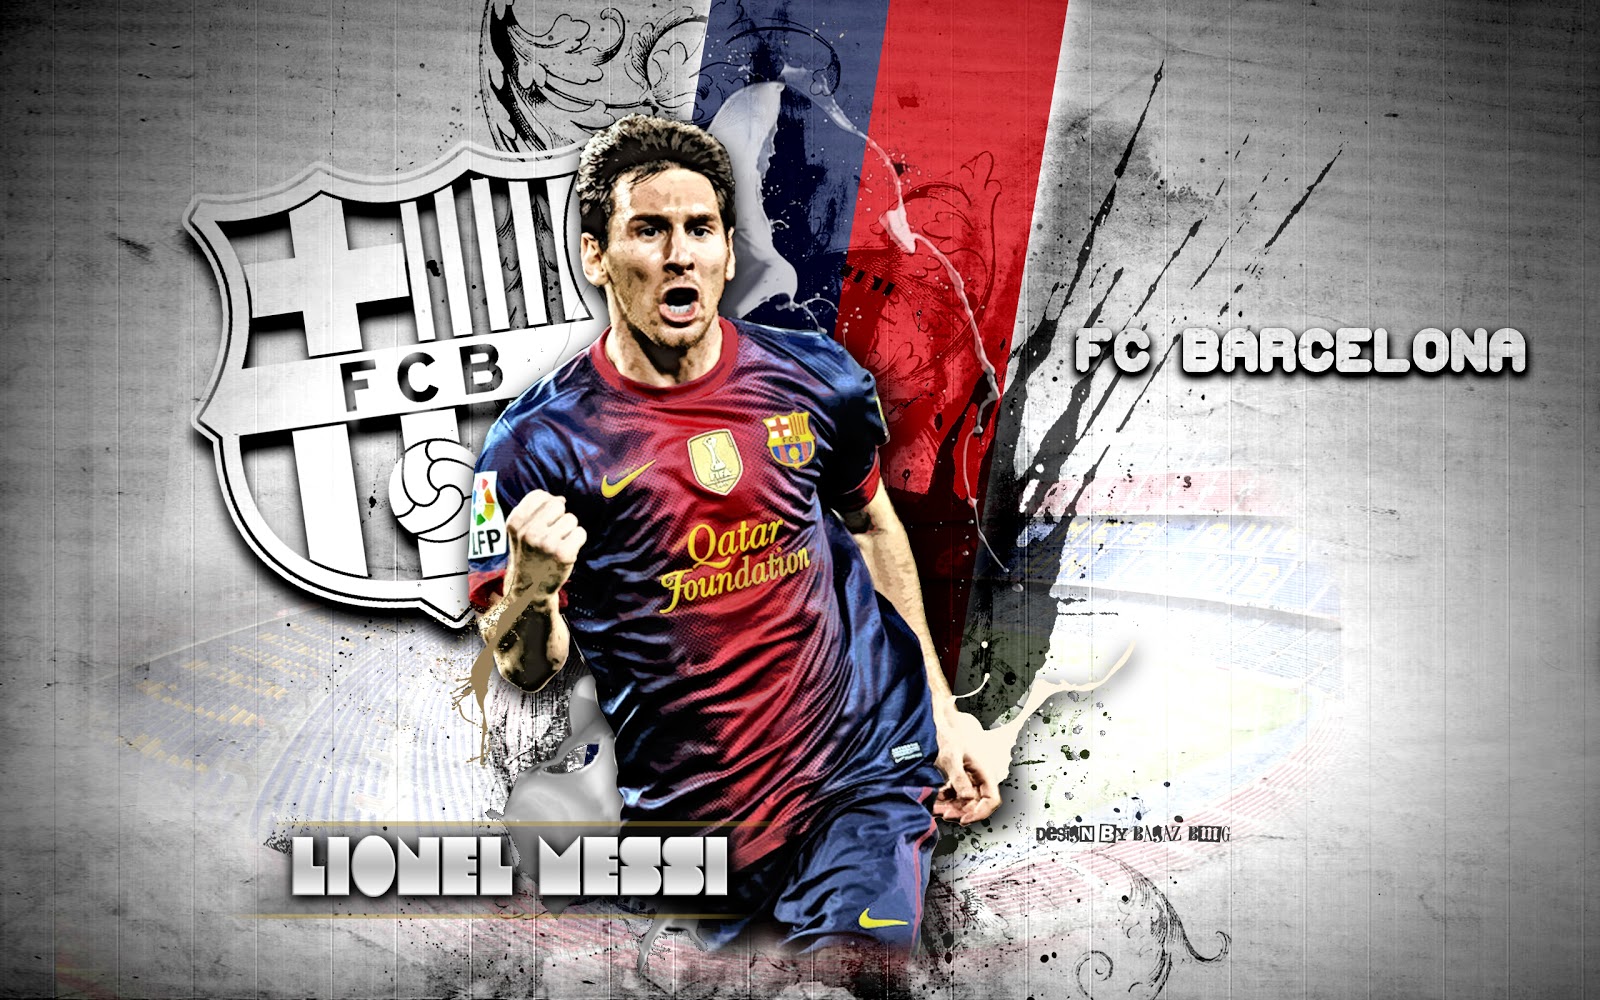 2013 Wallpaper HD Keywords Download Lionel Messi New 2013 Wallpaper 1600x1000